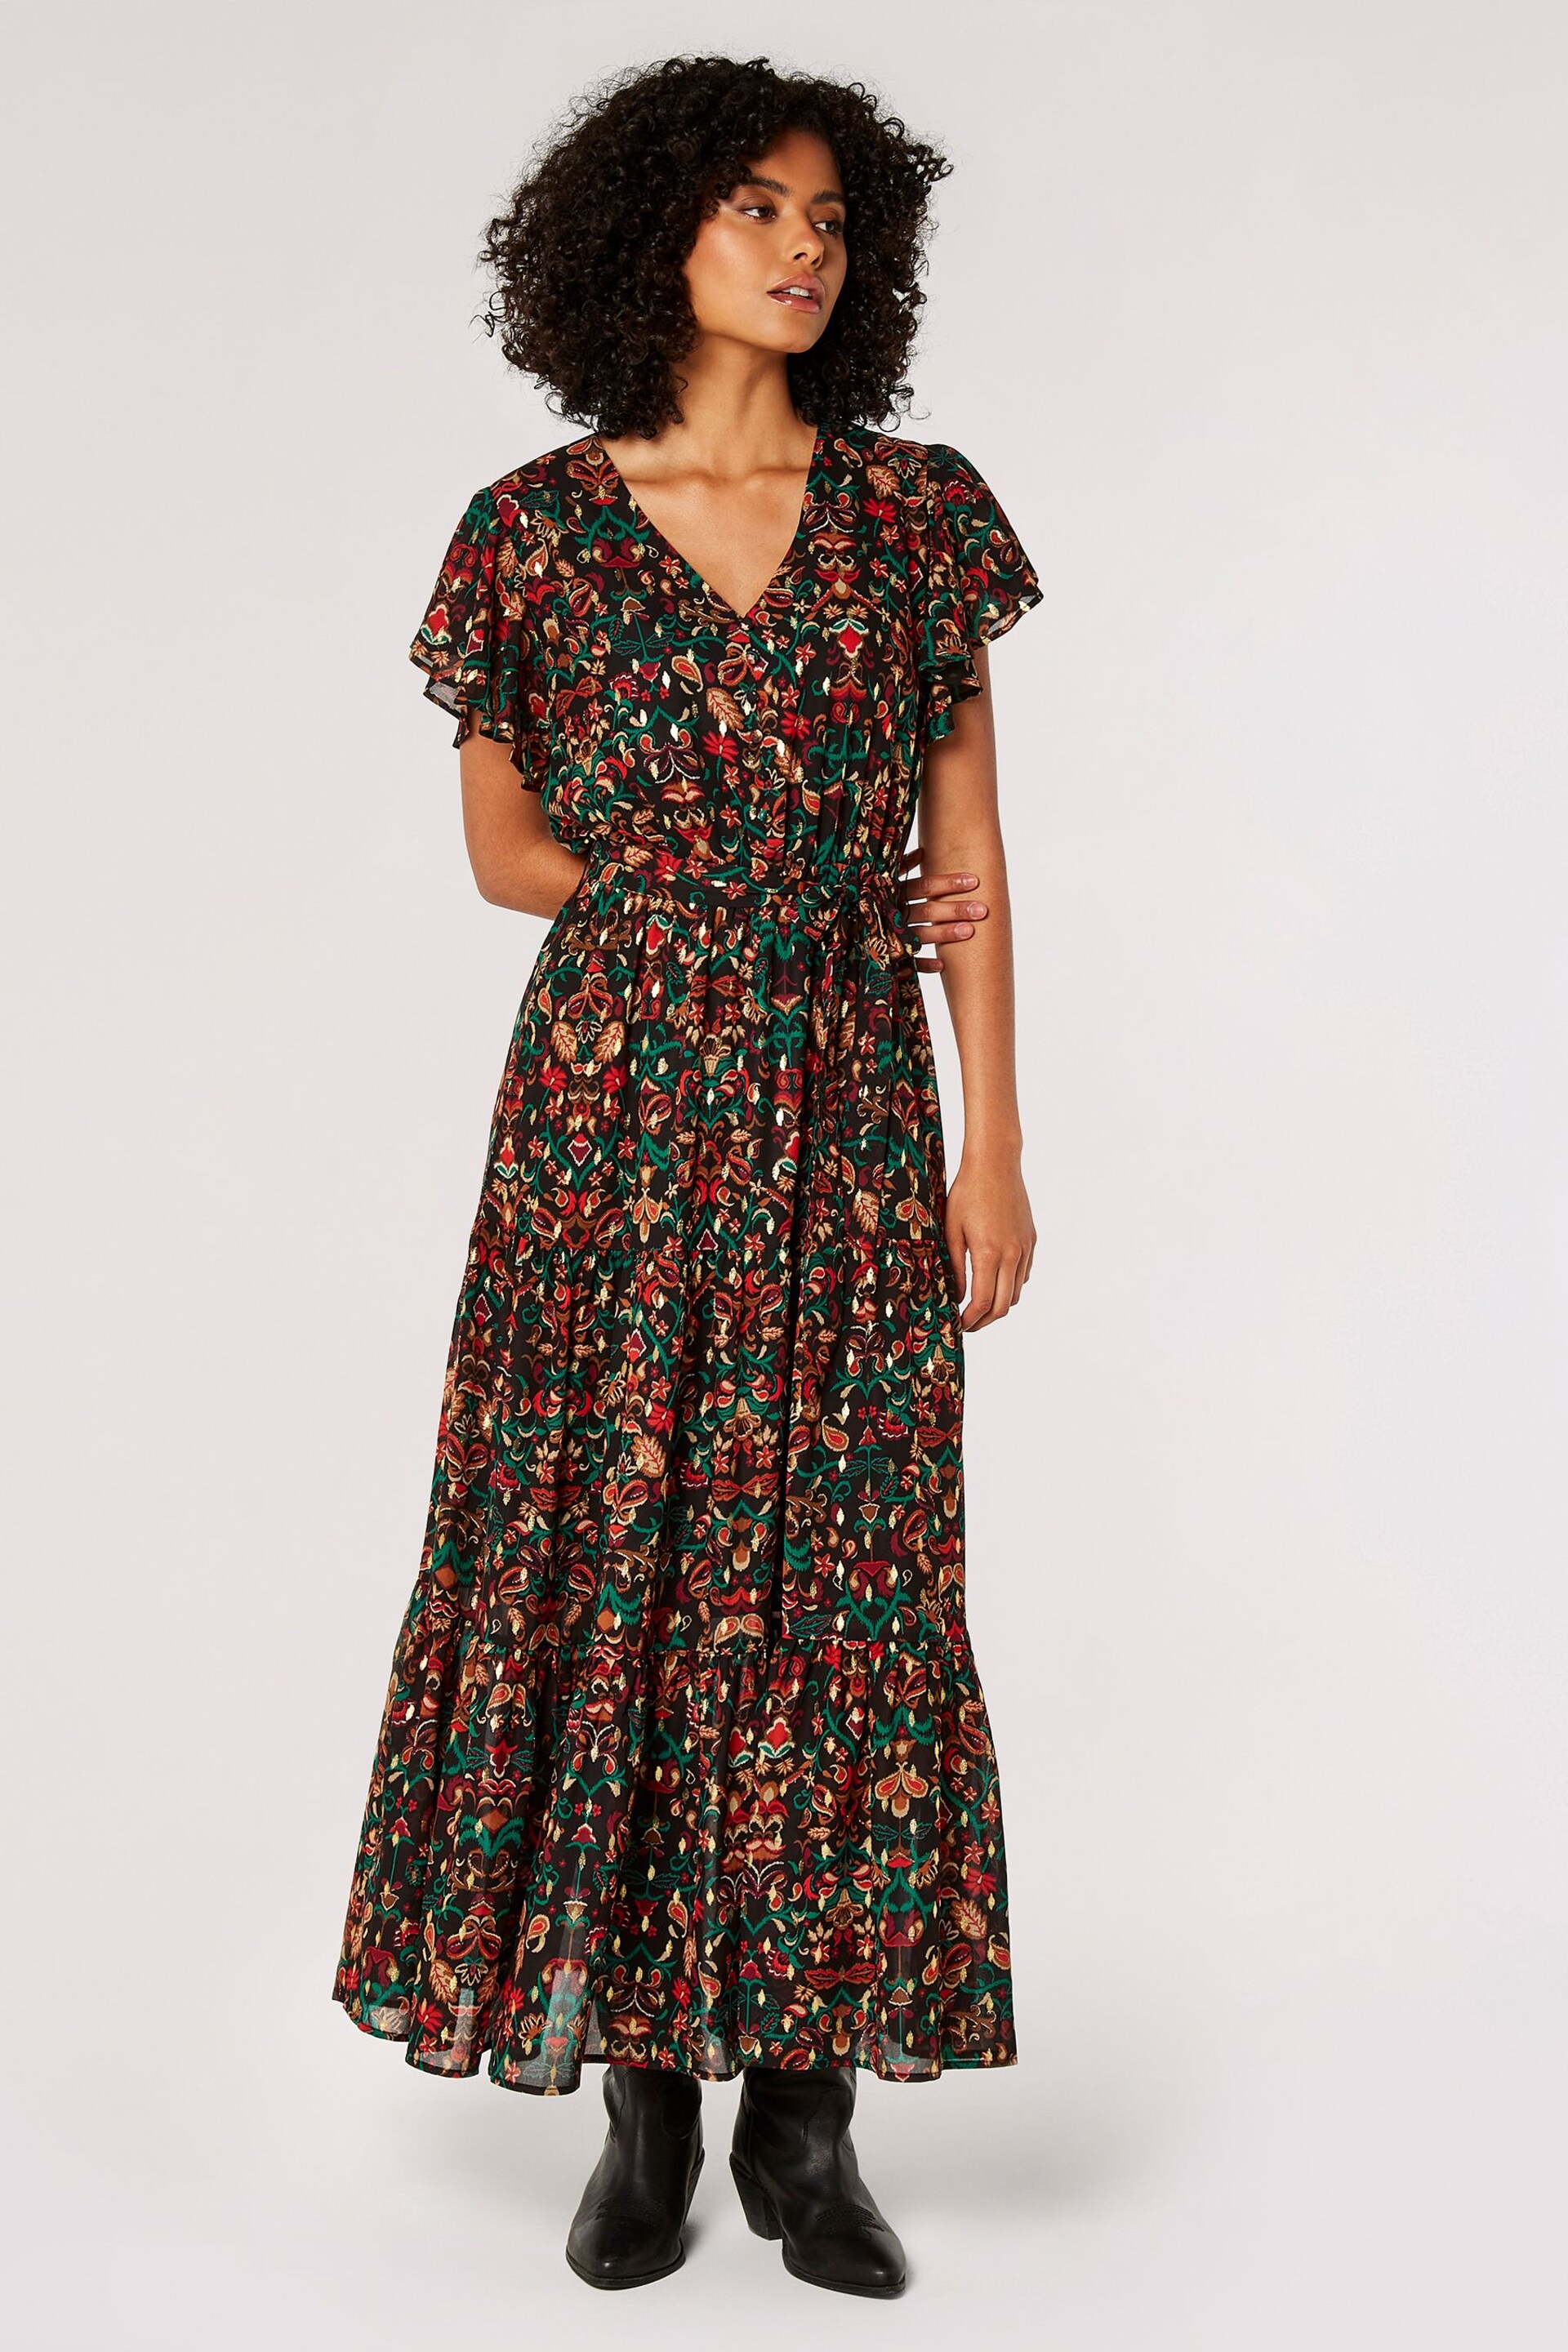 Apricot Black Folk Fairy Tale Ikat Maxi Dress - Image 1 of 5